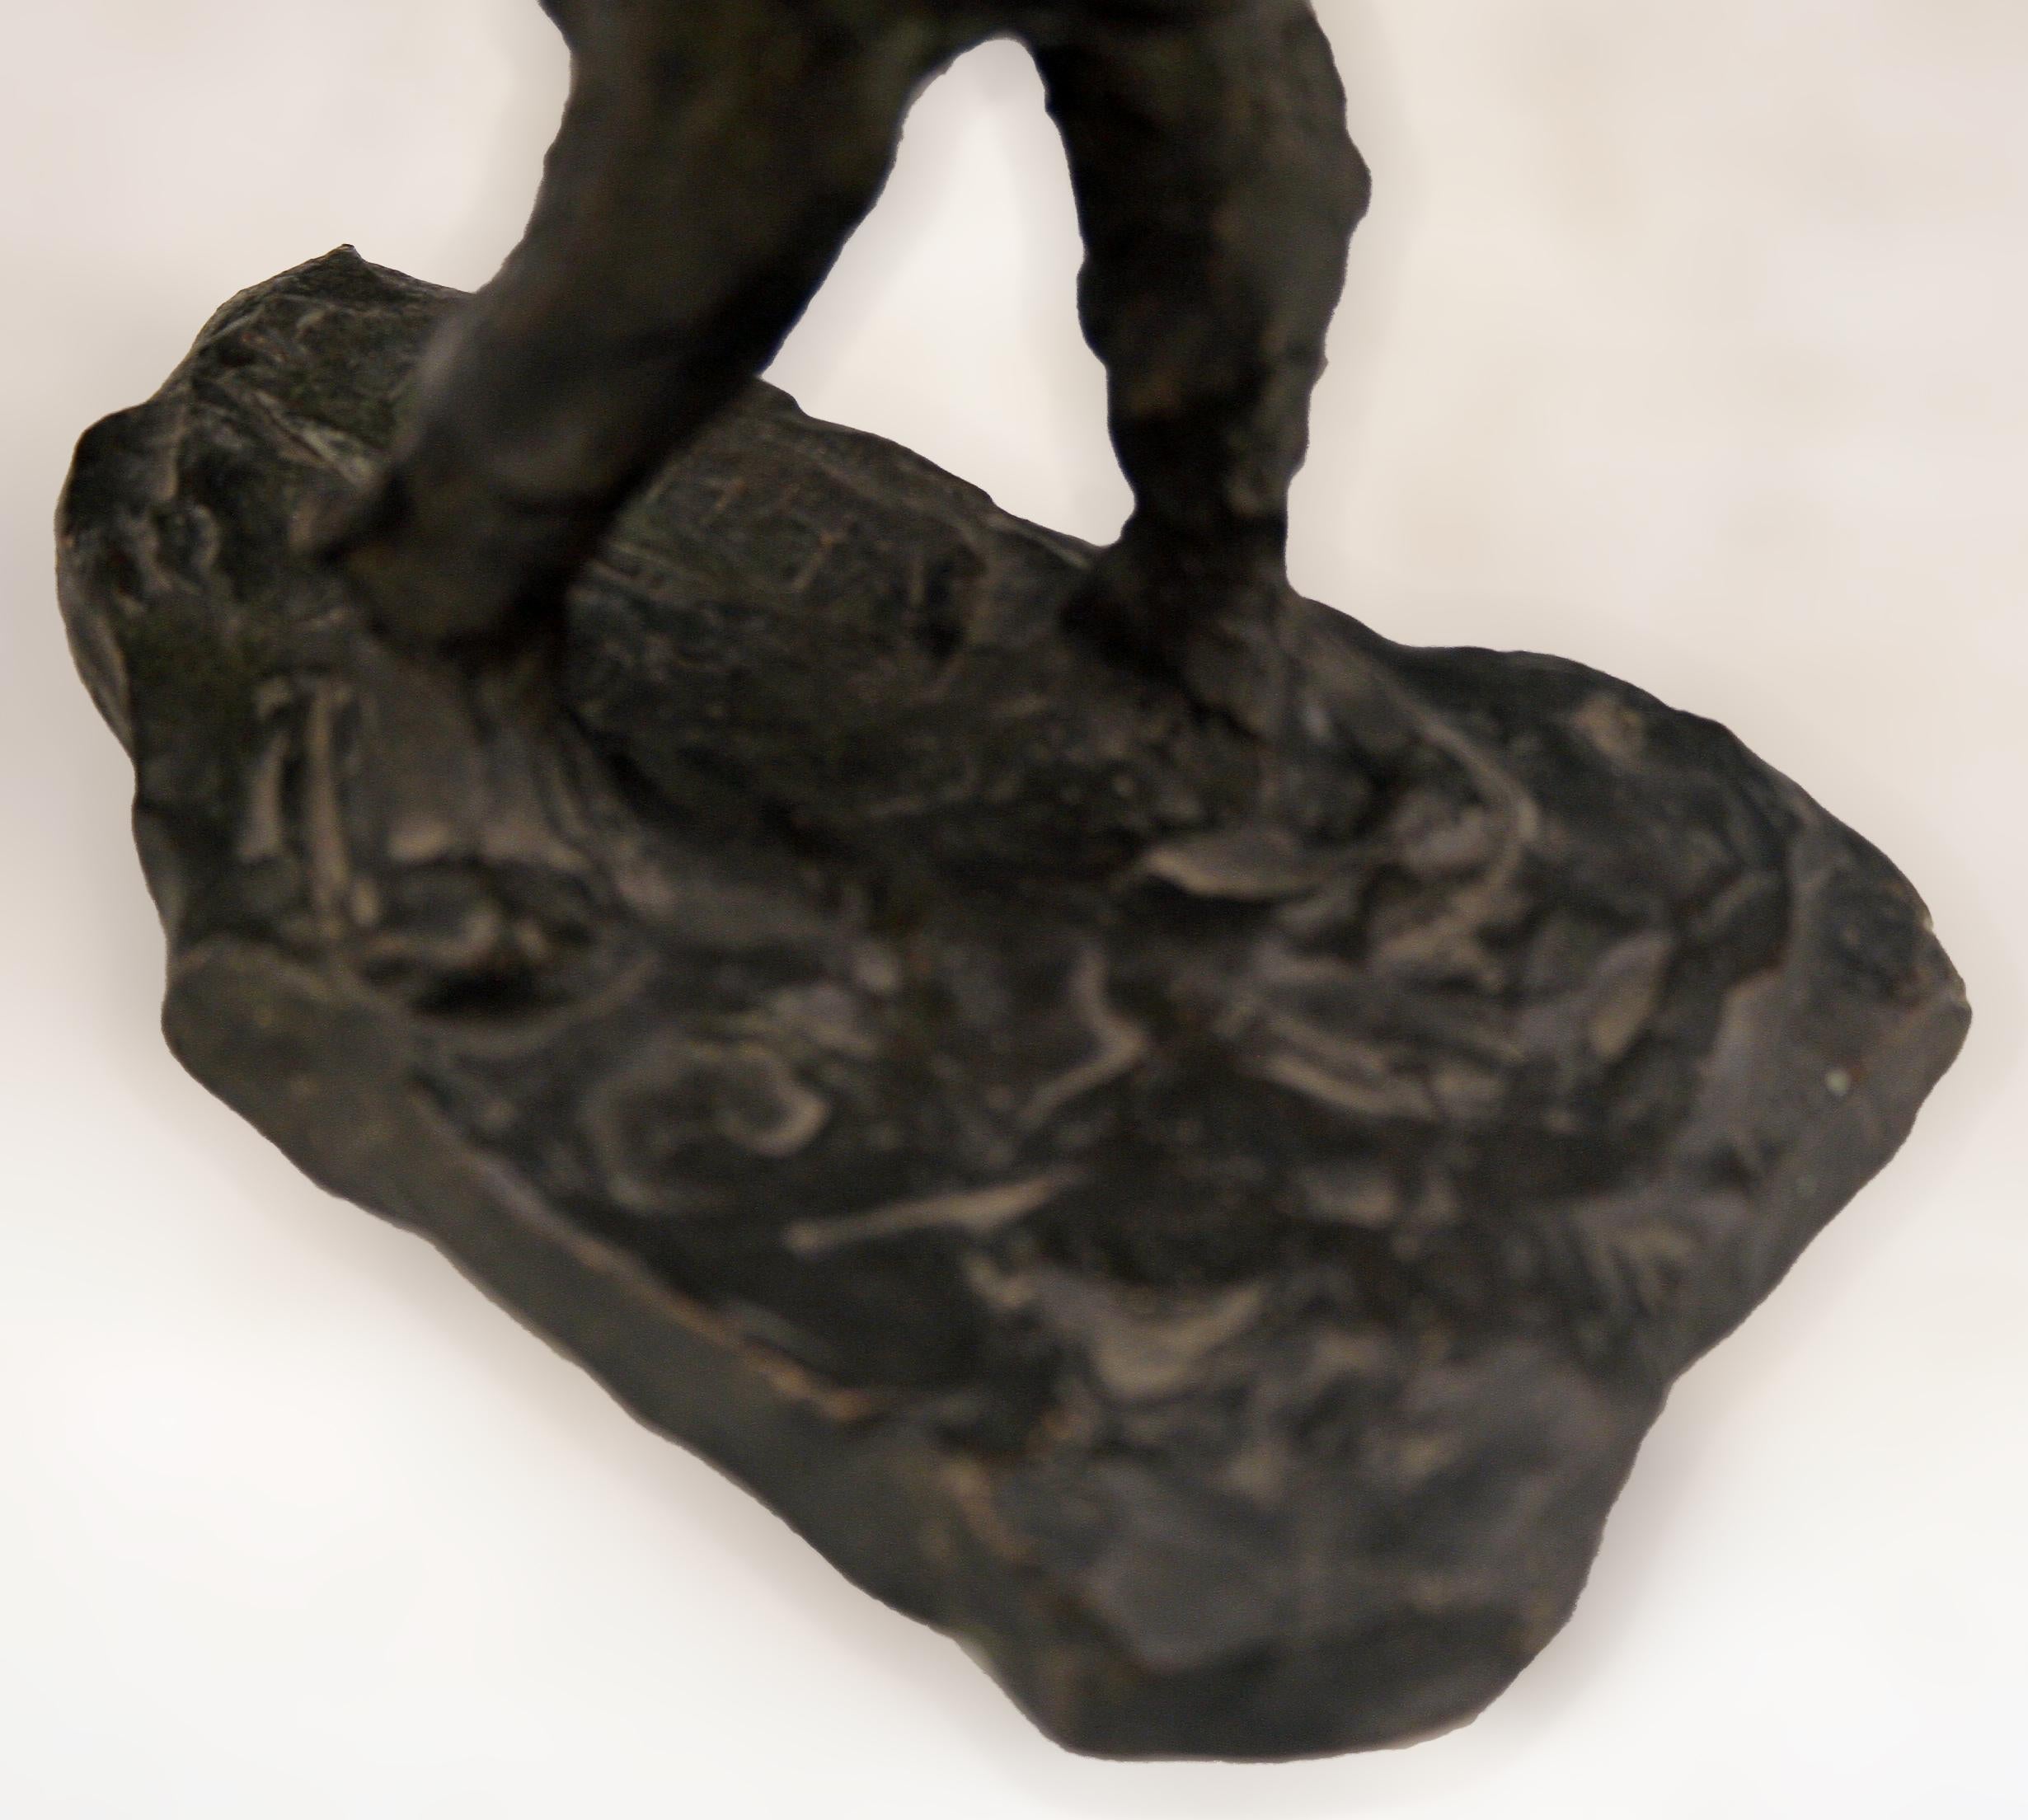 Expressionniste Sculpture en bronze du début du 20e siècle représentant un homme portant un sac à dos, réalisée par le sculpteur belge Demanet en vente